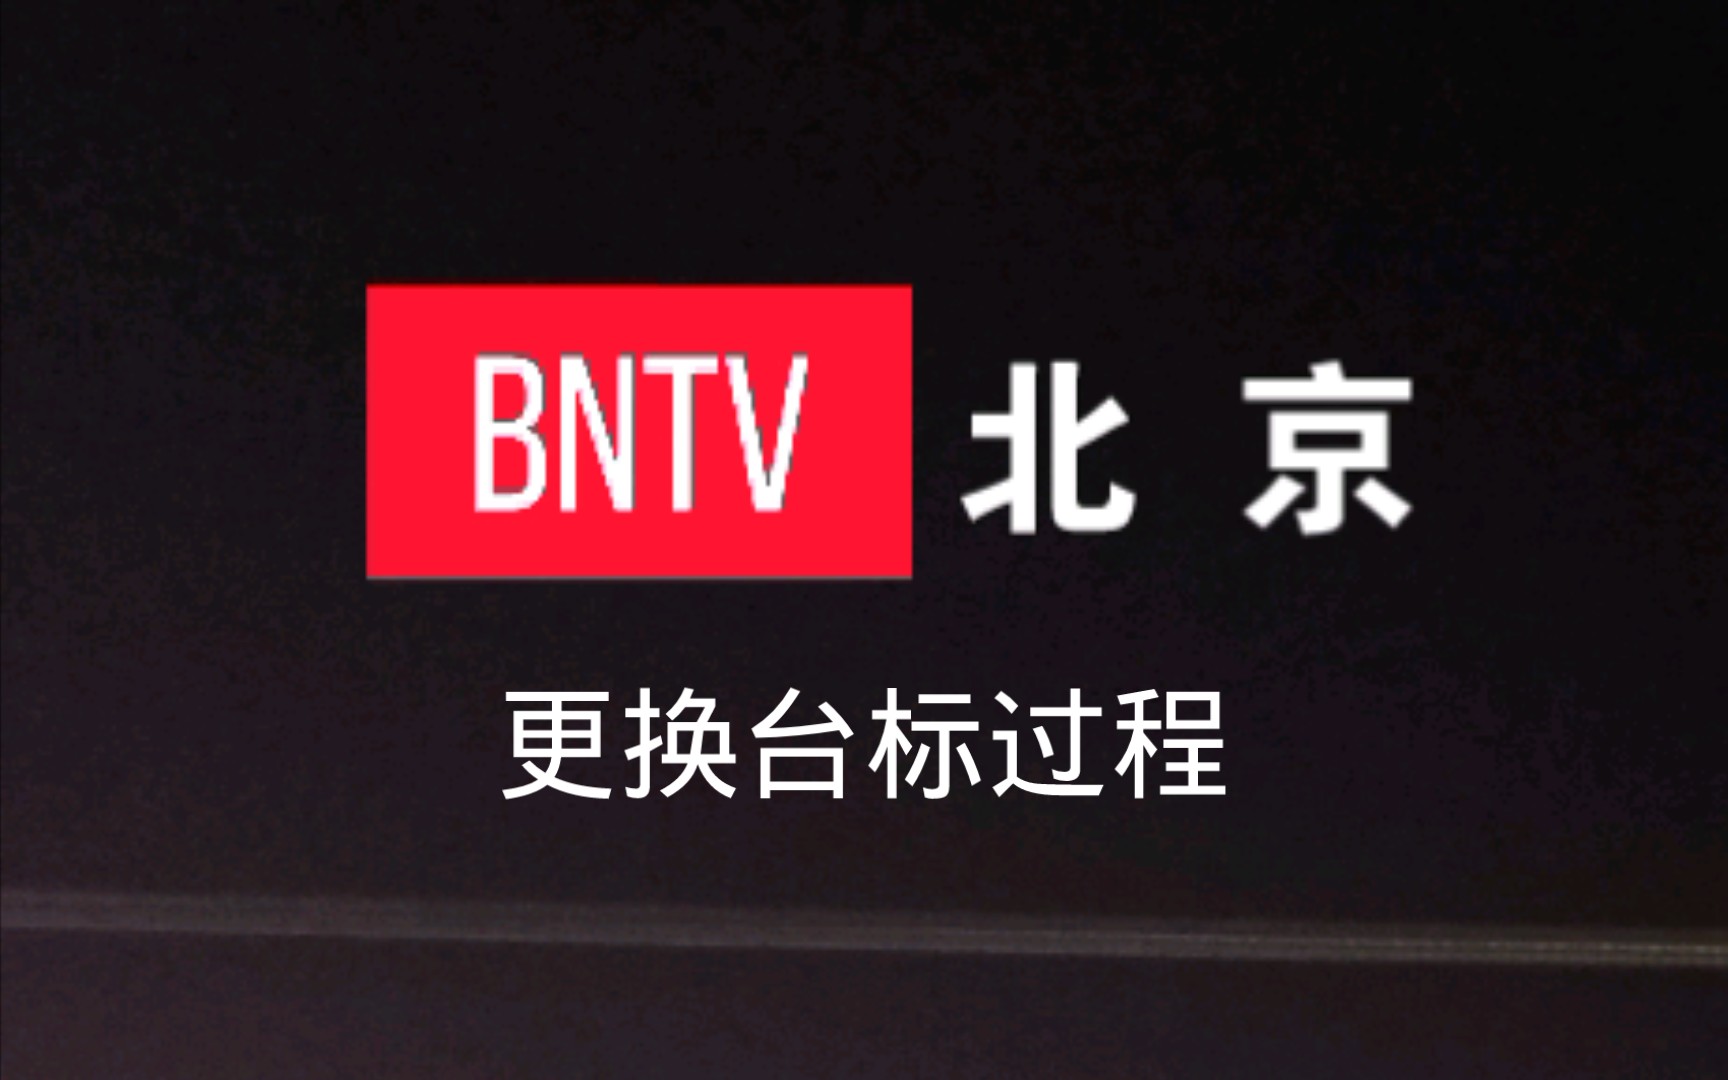 北京电视台旧台标图片